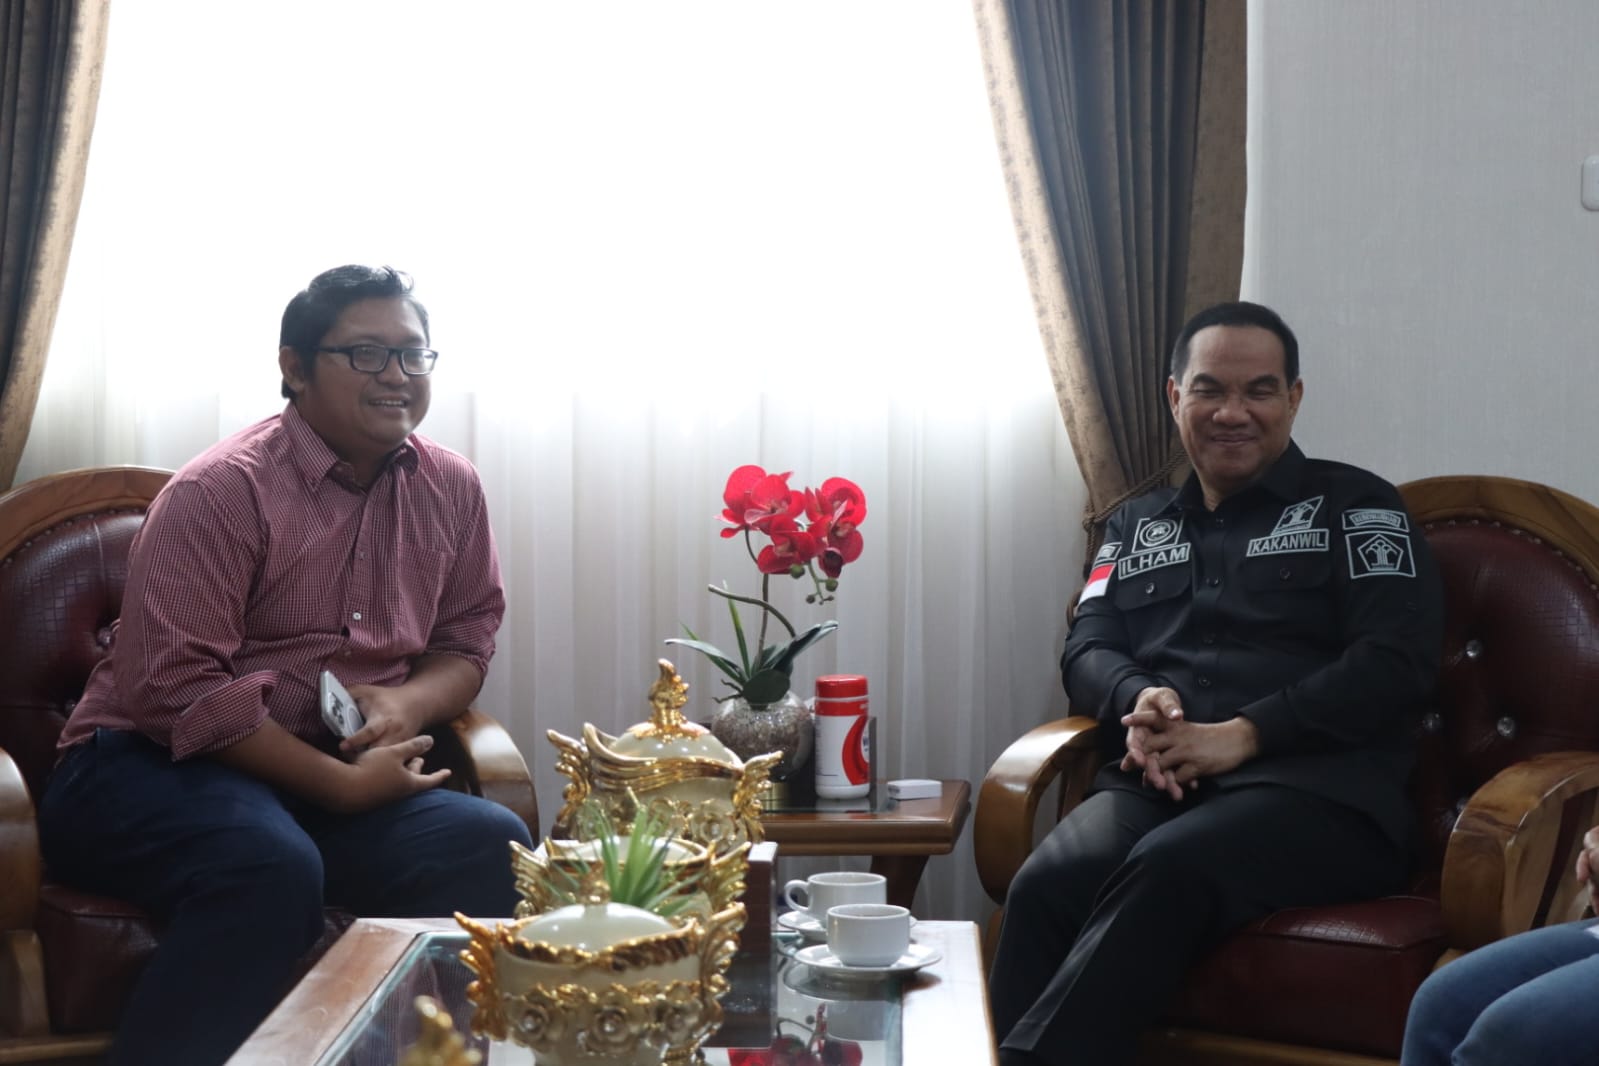 Tingkatkan Layanan Perbankan, Kemenkumham Sumsel Terima Kunjungan Pimpinan BRI Palembang Sriwijaya